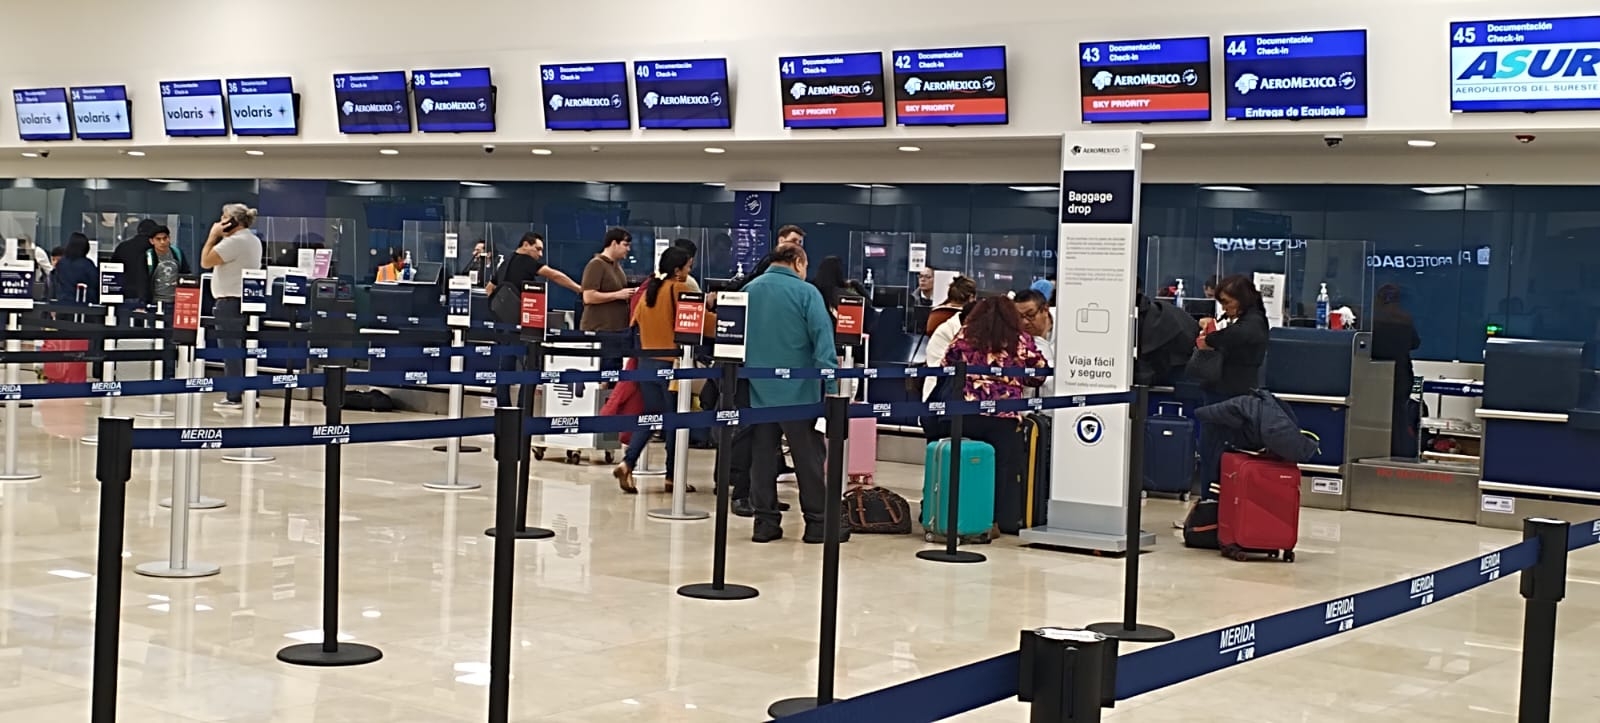 Los vuelos en el aeropuerto de Mérida no se han retrasado por la neblina de este jueves